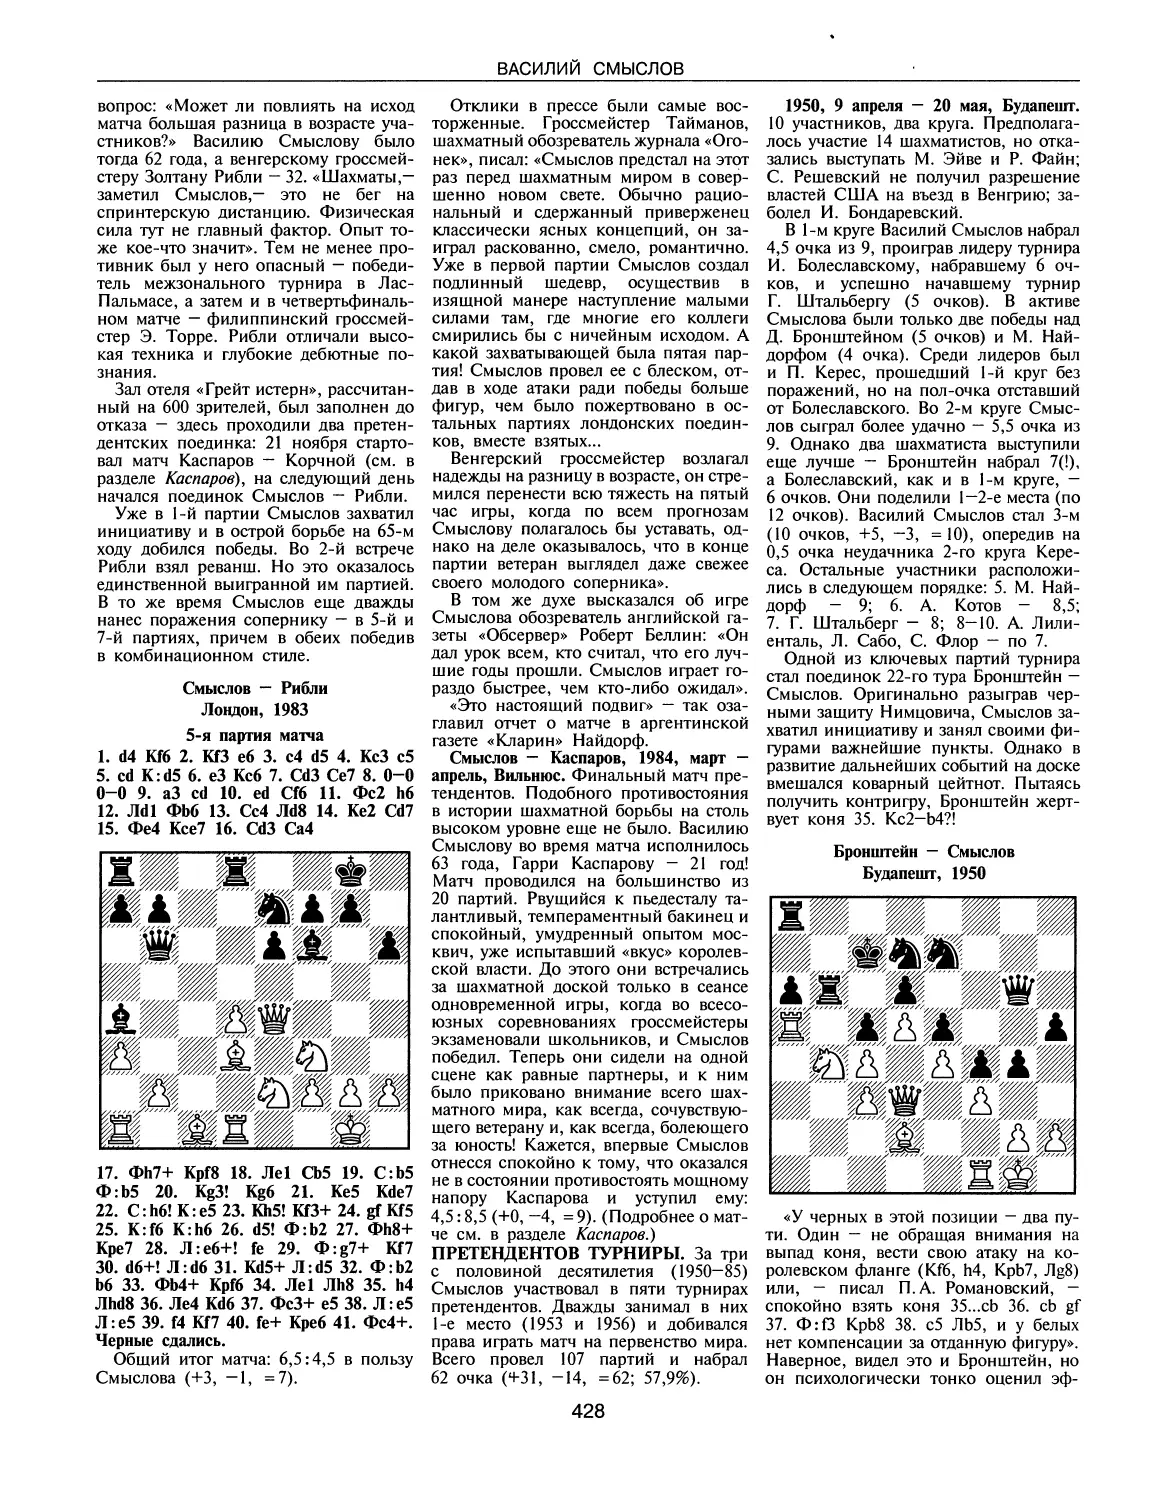 Смыслов — Каспаров, 1984
Претендентов турниры